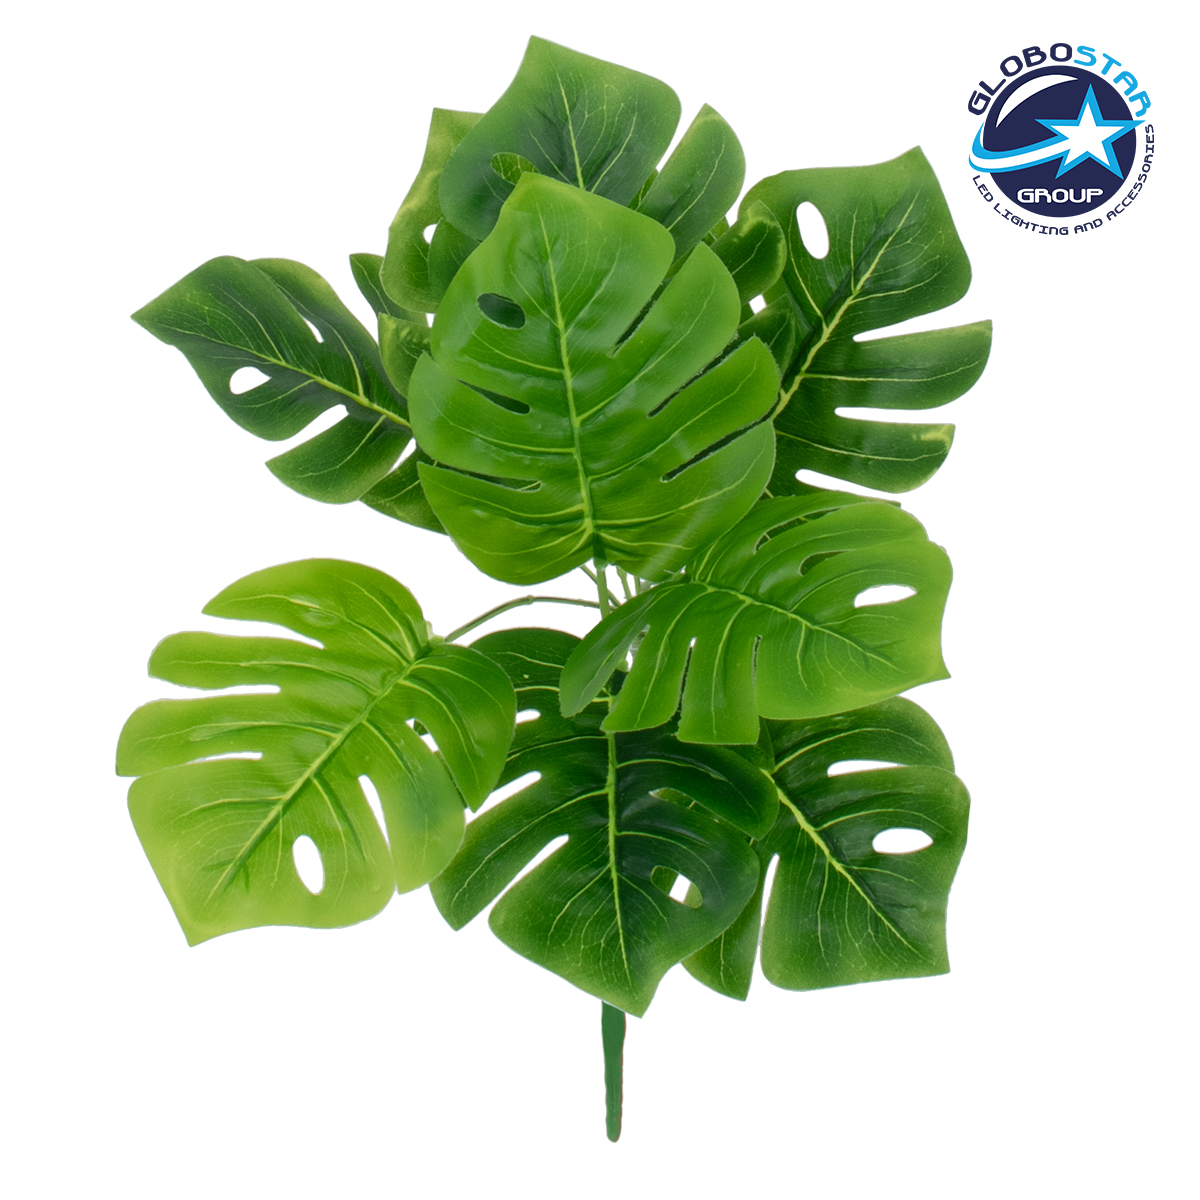 GloboStar® MONSTERA MEDIUM 78261 Τεχνητό Φυτό Μονστέρα Μεσ. – Μπουκέτο Διακοσμητικών Φυτών – Κλαδιών με Φύλλωμα Πράσινο Υ33cm